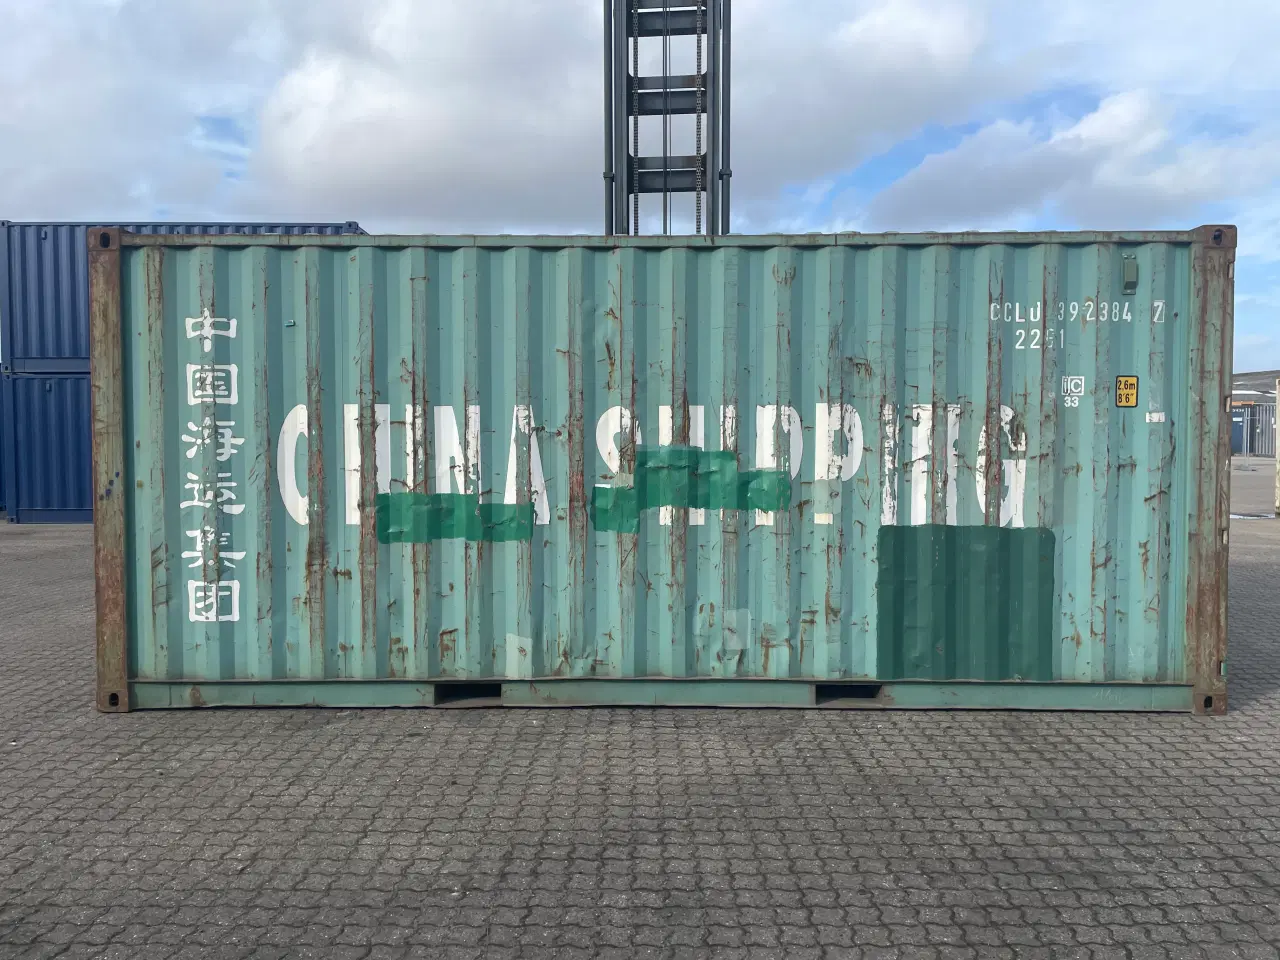 Billede 5 - 20 fods Container - ID: CCLU 392384-7